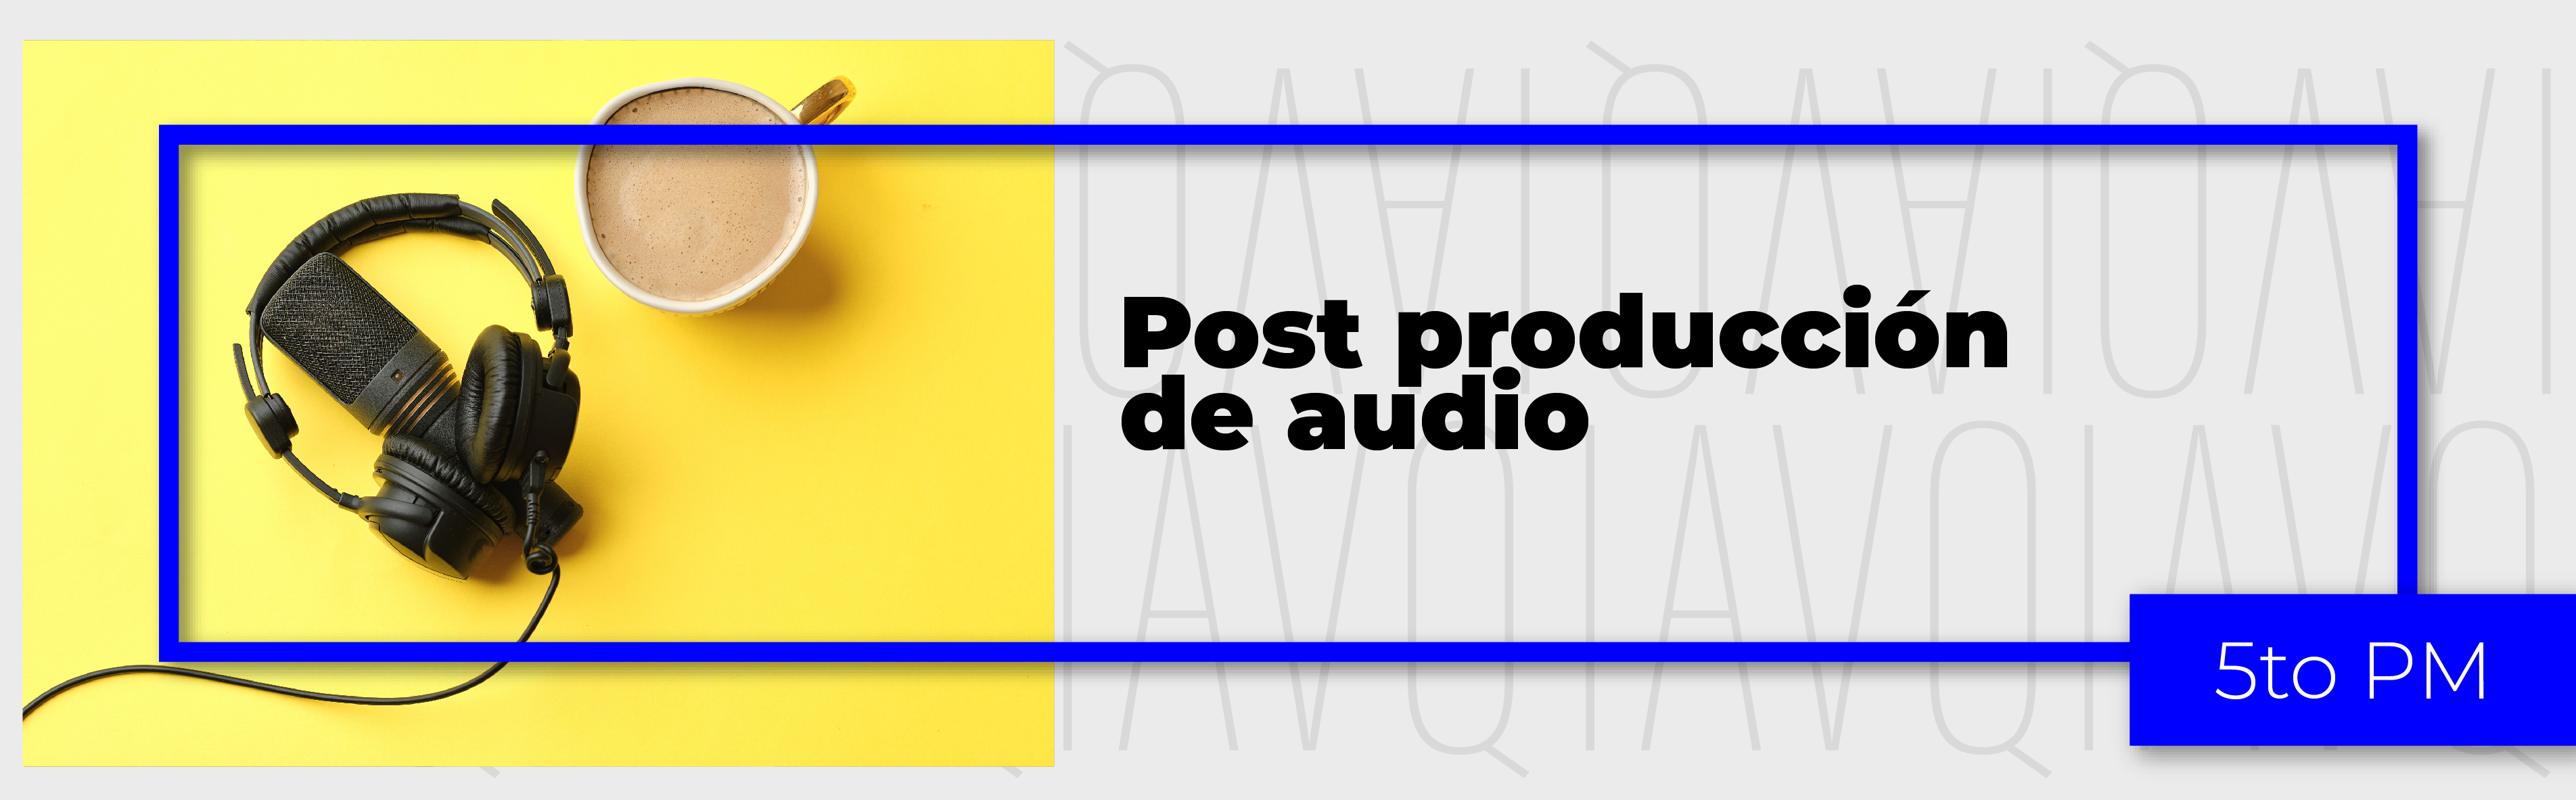 PA_24-24_PM_S_5_Post-Produccion_de_Audio